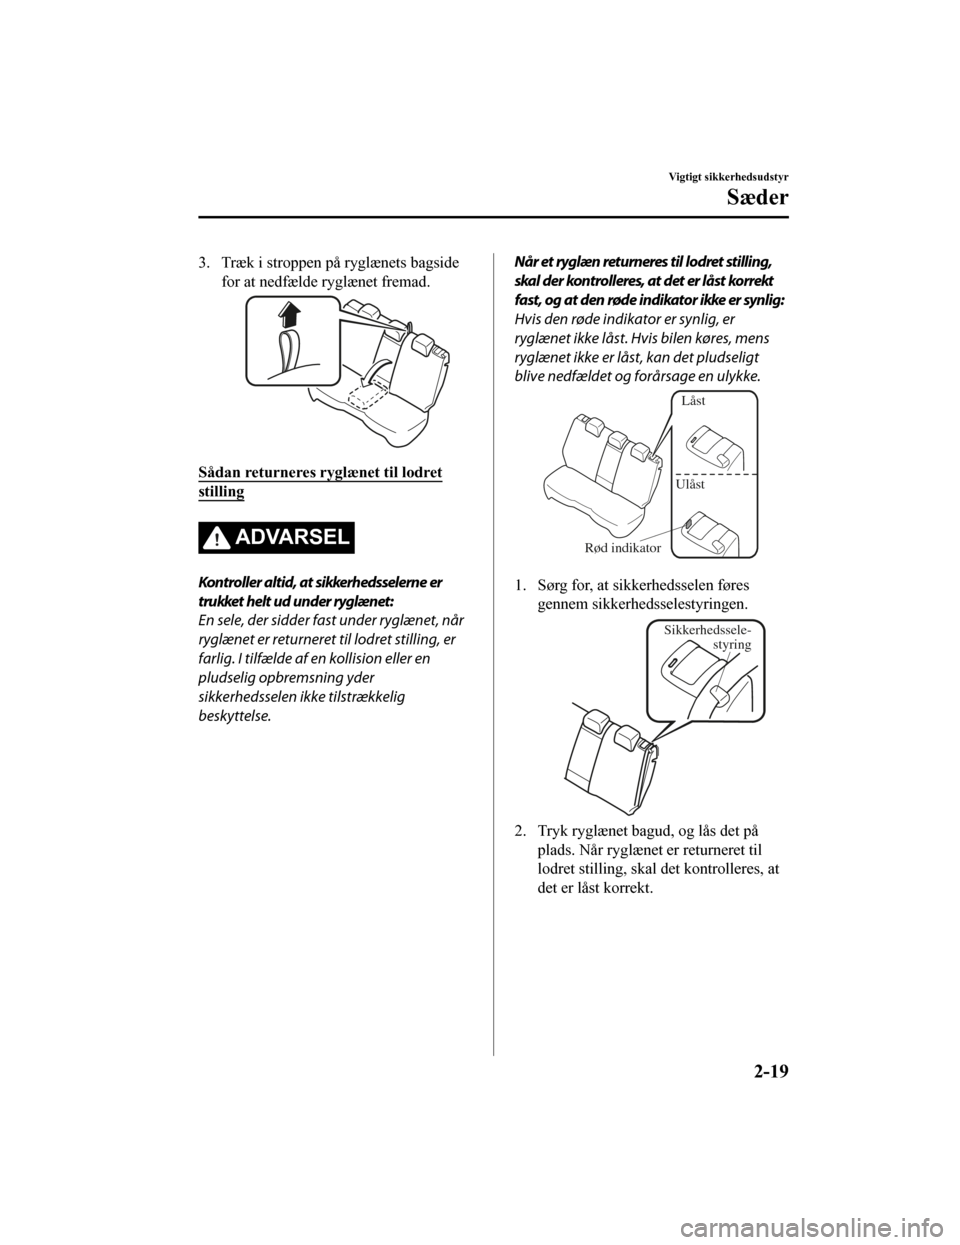 MAZDA MODEL CX-5 2019  Instruktionsbog (in Danish) 3. Træk i stroppen på ryglænets bagsidefor at nedfælde ryglænet fremad.
Sådan returneres ryglænet til lodret
stilling
ADVARSEL
Kontroller altid, at sikkerhedsselerne er
trukket helt ud under ry